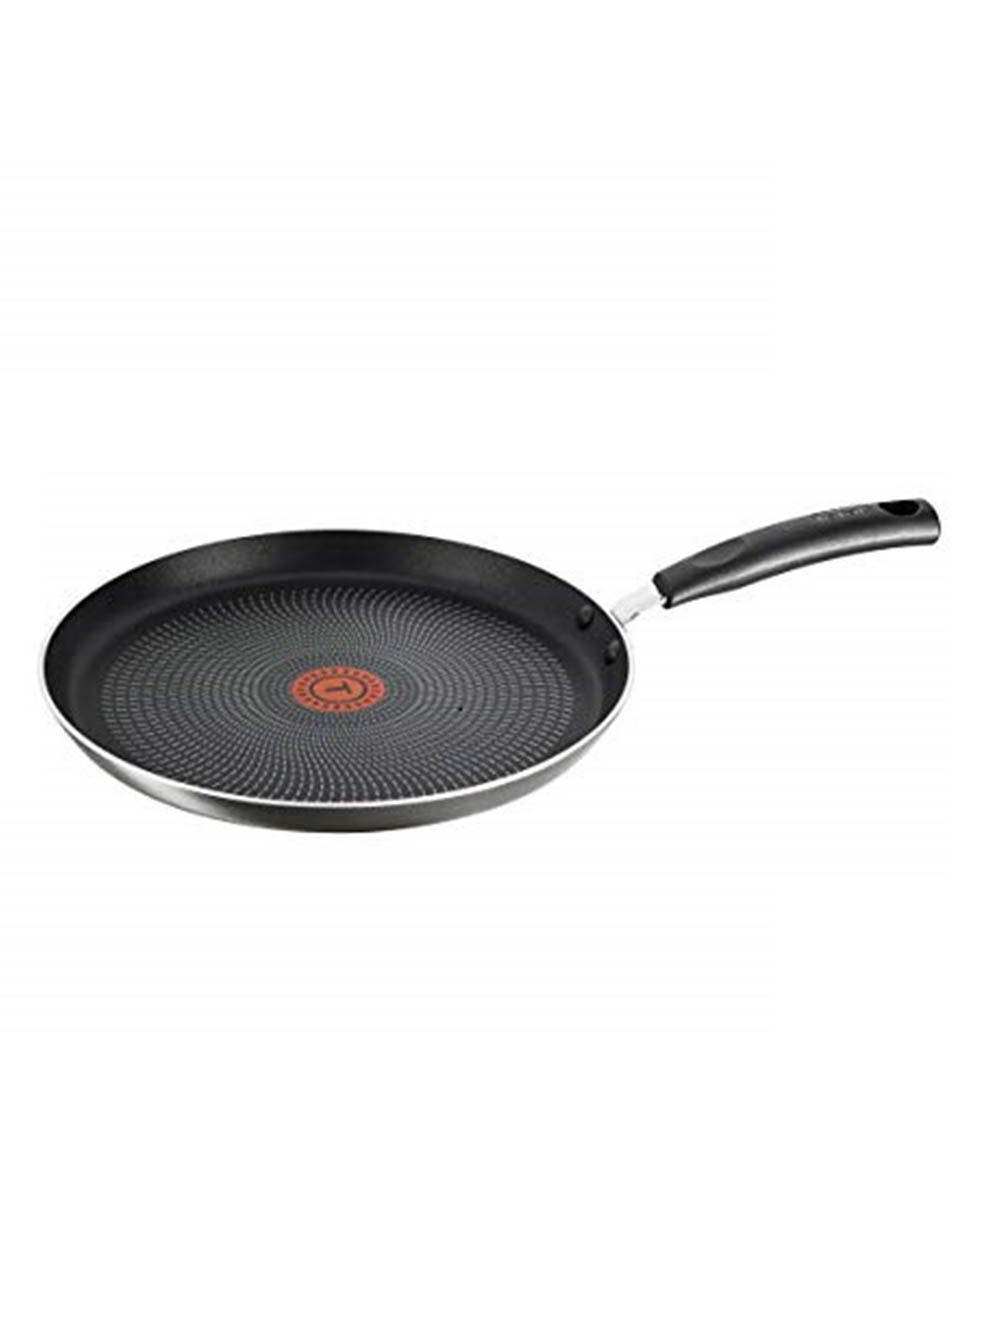 Tefal Delicia Non-Stick 26 cm Tawa Frying Pan, B1548684